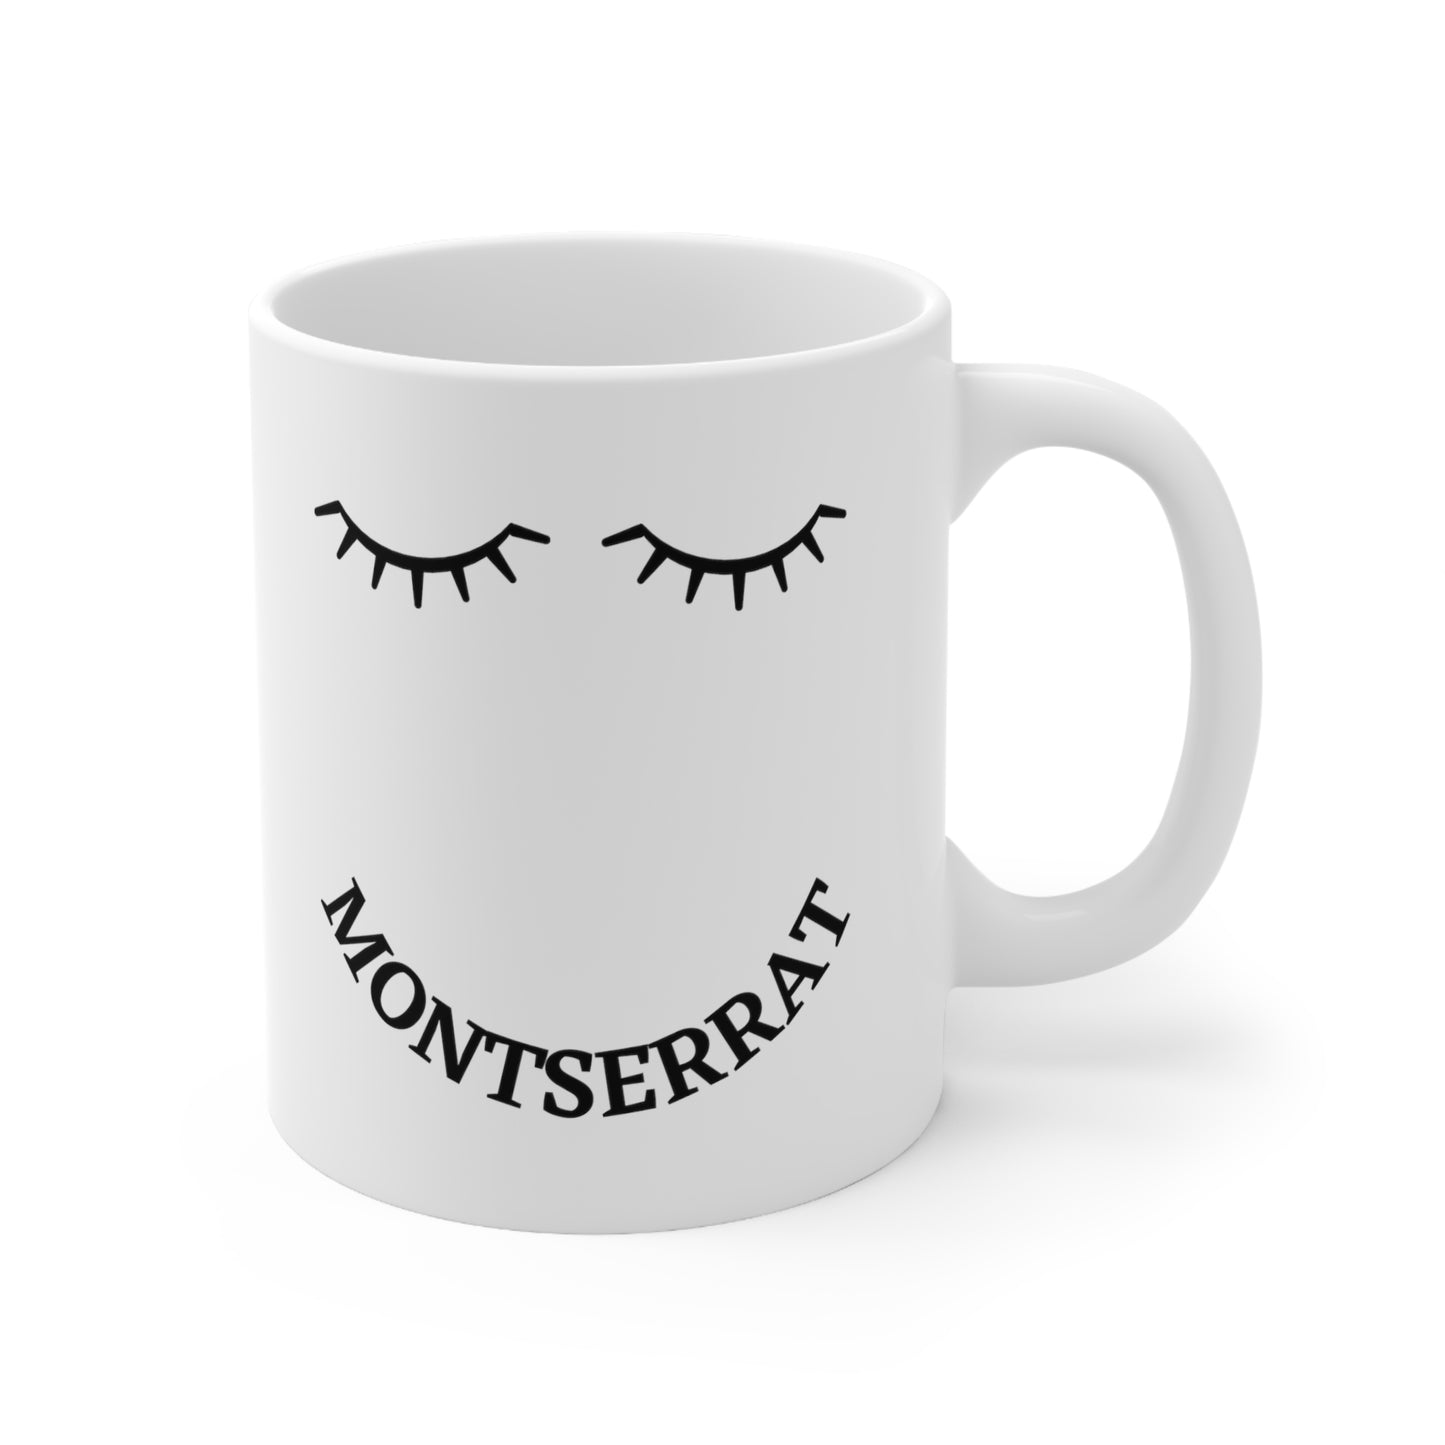 Montserrat "Eyelash" Ceramic Mug 11oz